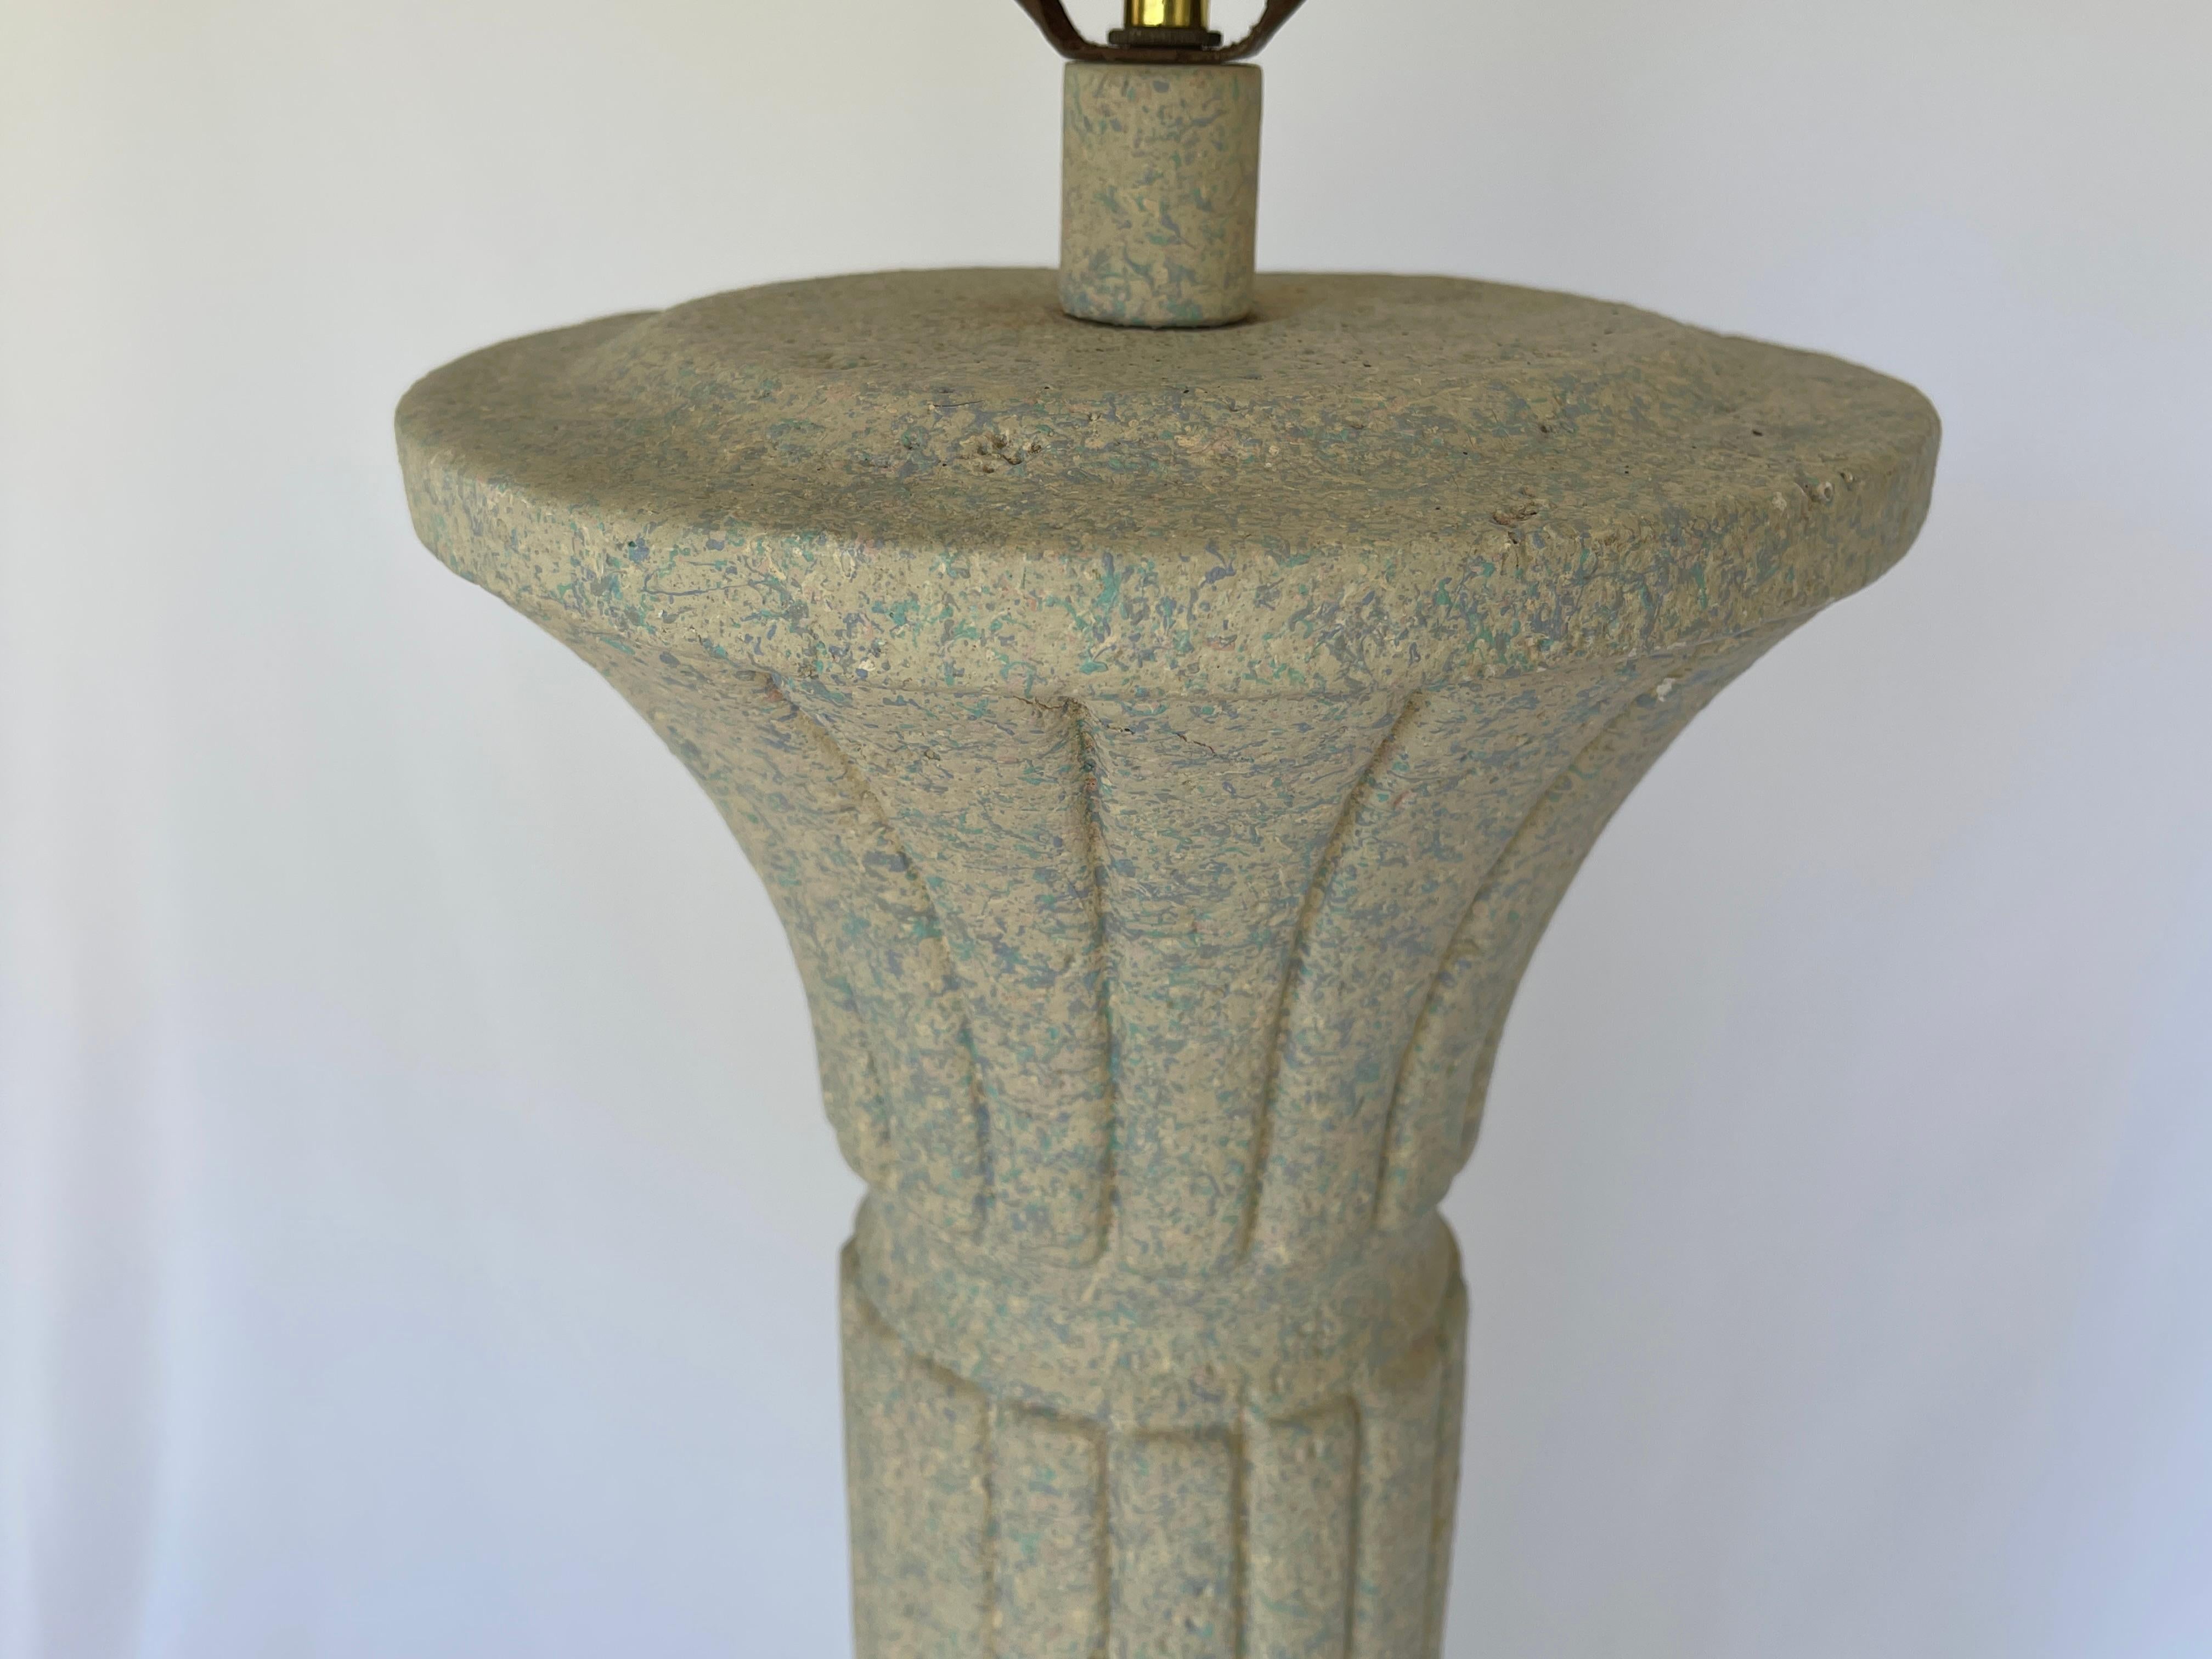 Lampadaire à colonne circulaire en plâtre de style post-moderne classique avec embout sphérique en plâtre assorti. Daté sous le côté, le 1er octobre 1993